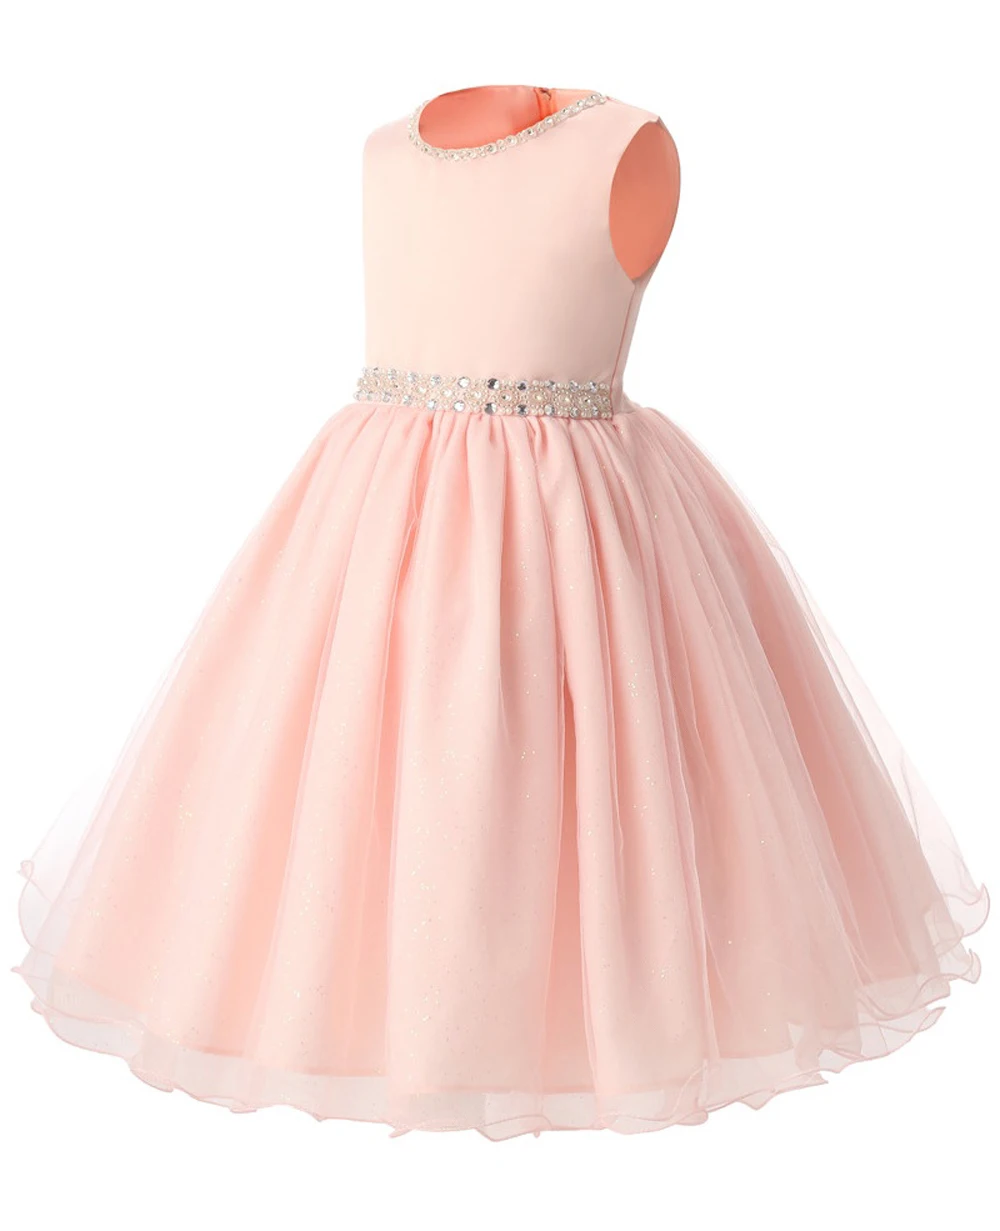 JaneyGao/ г. Летние платья для девочек, держащих букет невесты на свадьбе; розовые платья для девочек; торжественное платье принцессы, украшенное бисером; Лидер продаж;